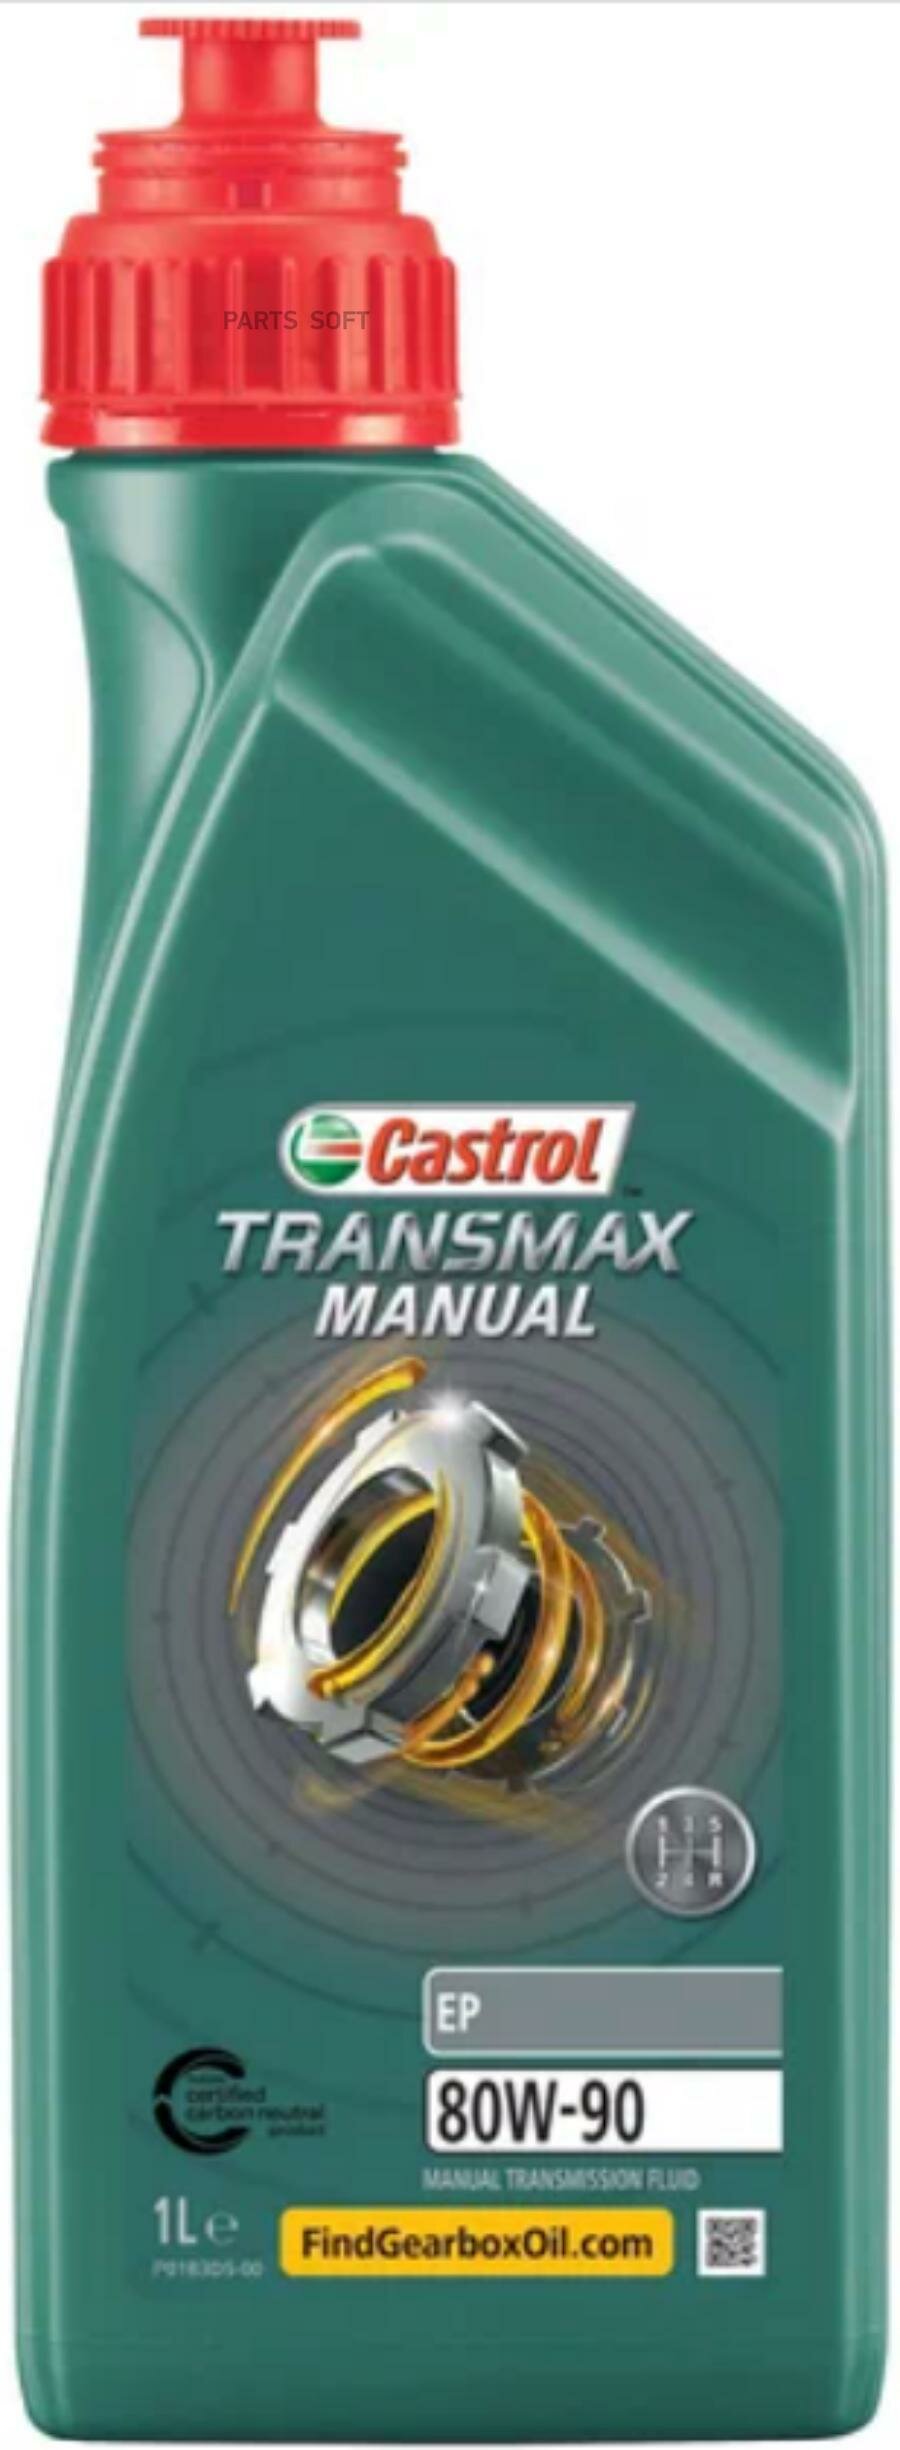 CASTROL 15D7E1 Масо трансмиссионное минераьное Transmax Manual EP 80W-90, 1